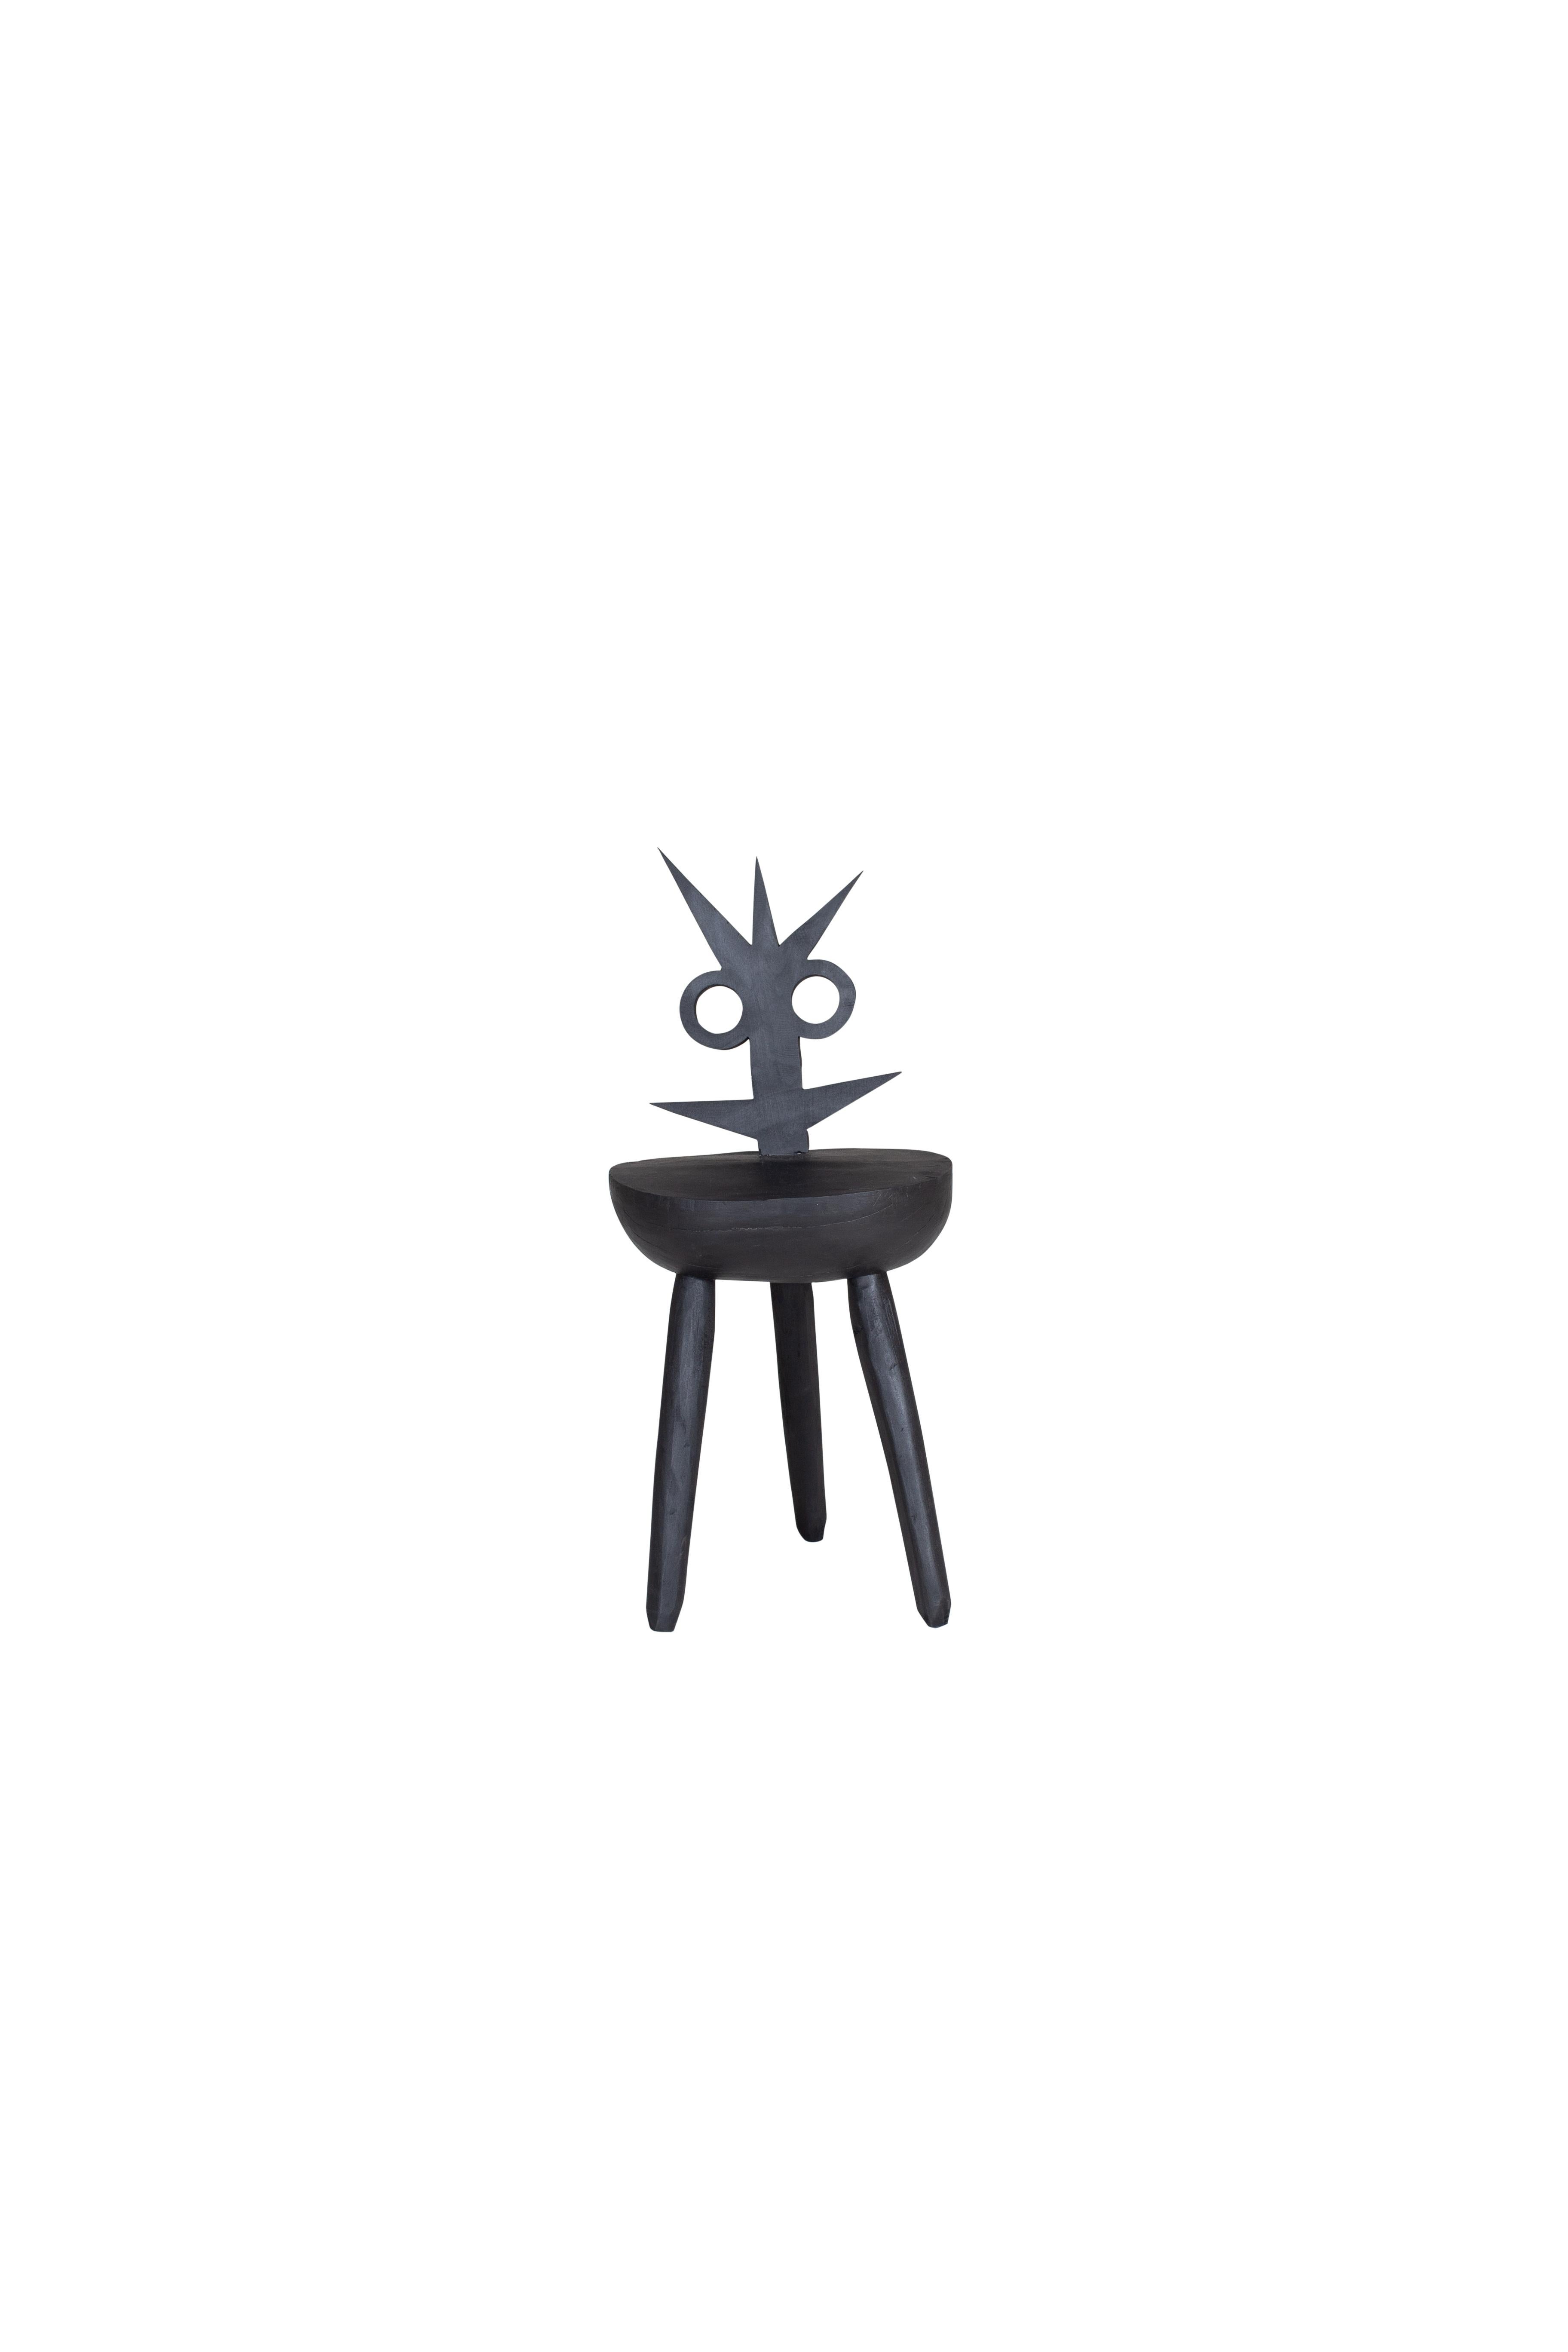 Lumpy Schwarzer Stuhl von Pulpo
Entworfen von Vasilica lsacescu & Nadja Zerunian.
Abmessungen: T 35 x B 30 x H 77 cm.
MATERIALIEN: Holz.

Auch in Rosa erhältlich. Bitte kontaktieren Sie uns. 

SCHRECKLICH. WOODY. CRAFT.
Gestatten Sie mir, Fester,